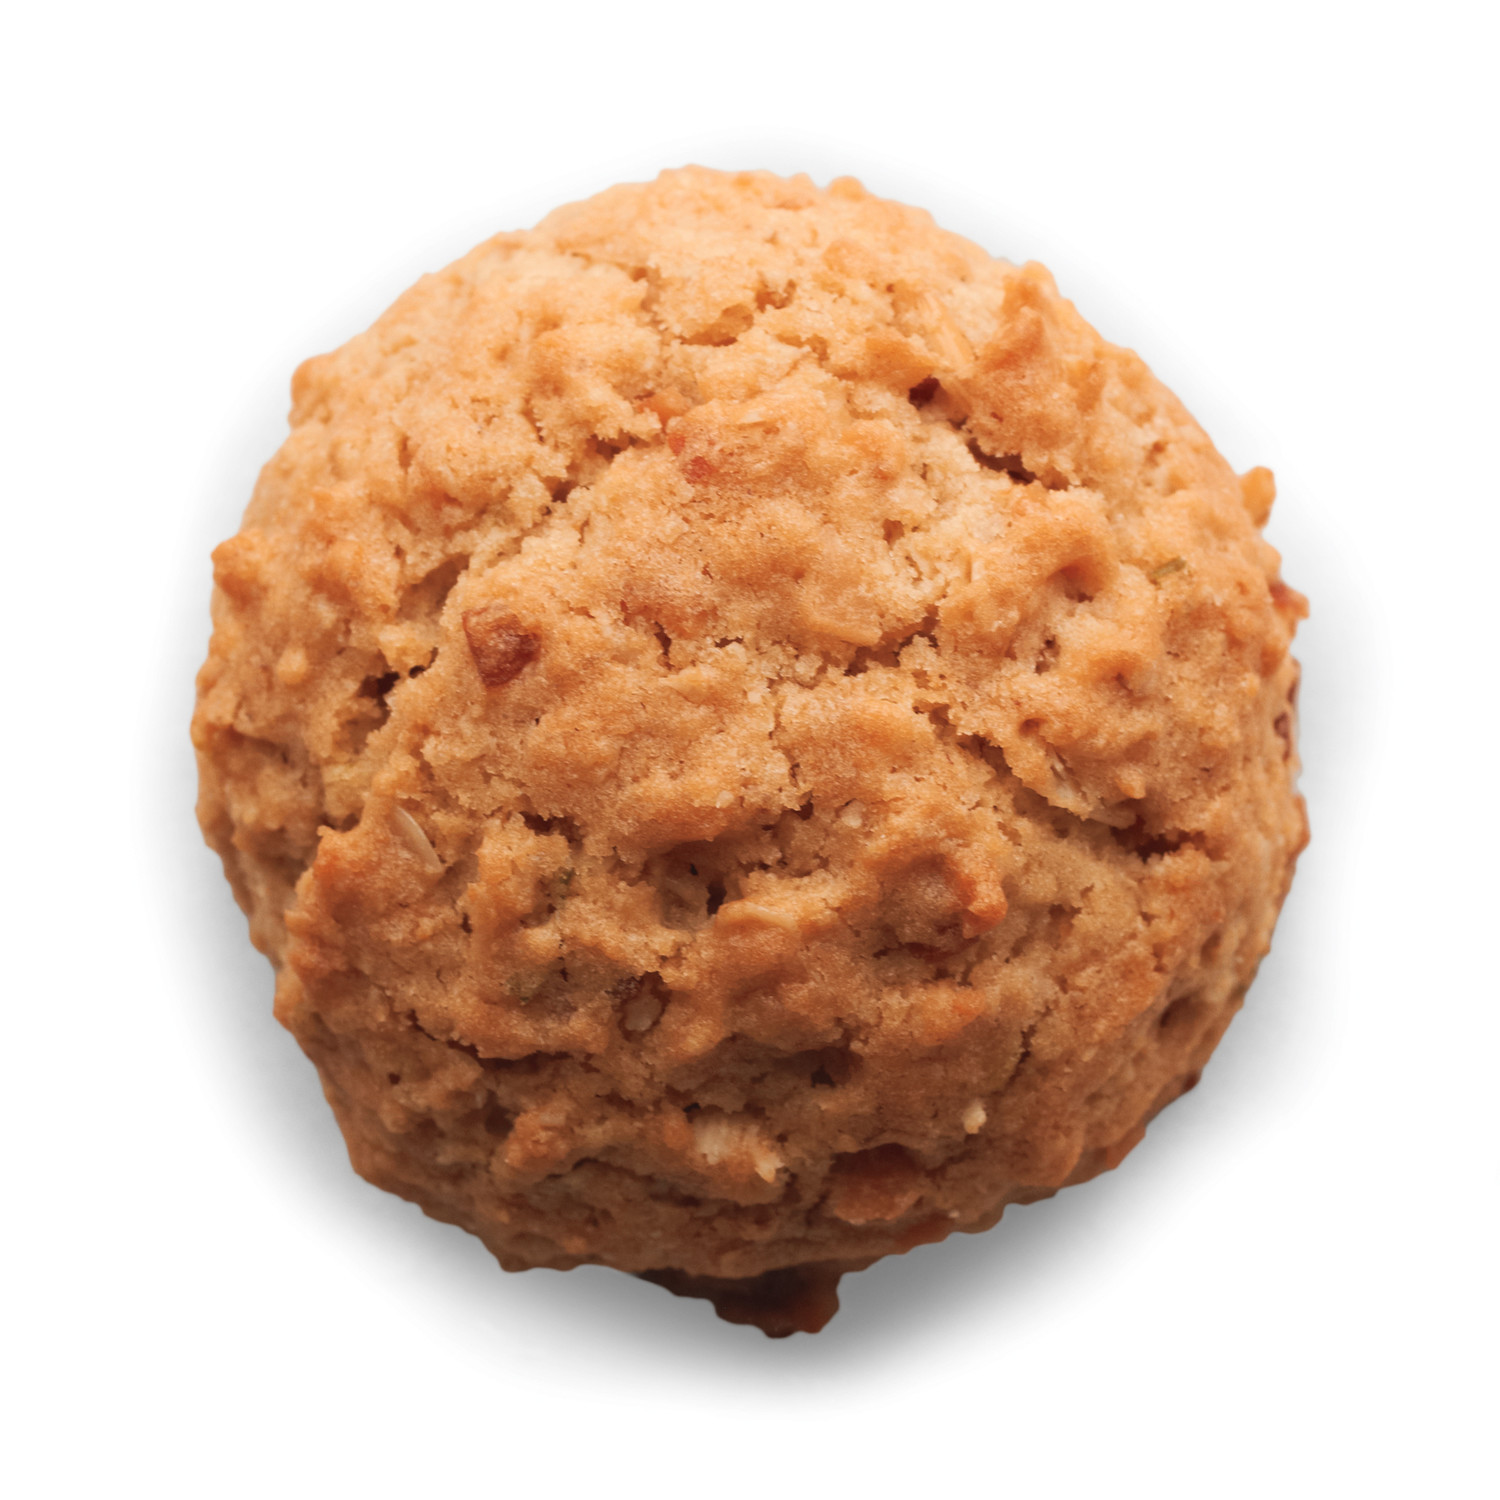 Martha Stewart Healthy Oatmeal Cookies
 martha stewart gluten free oatmeal cookies